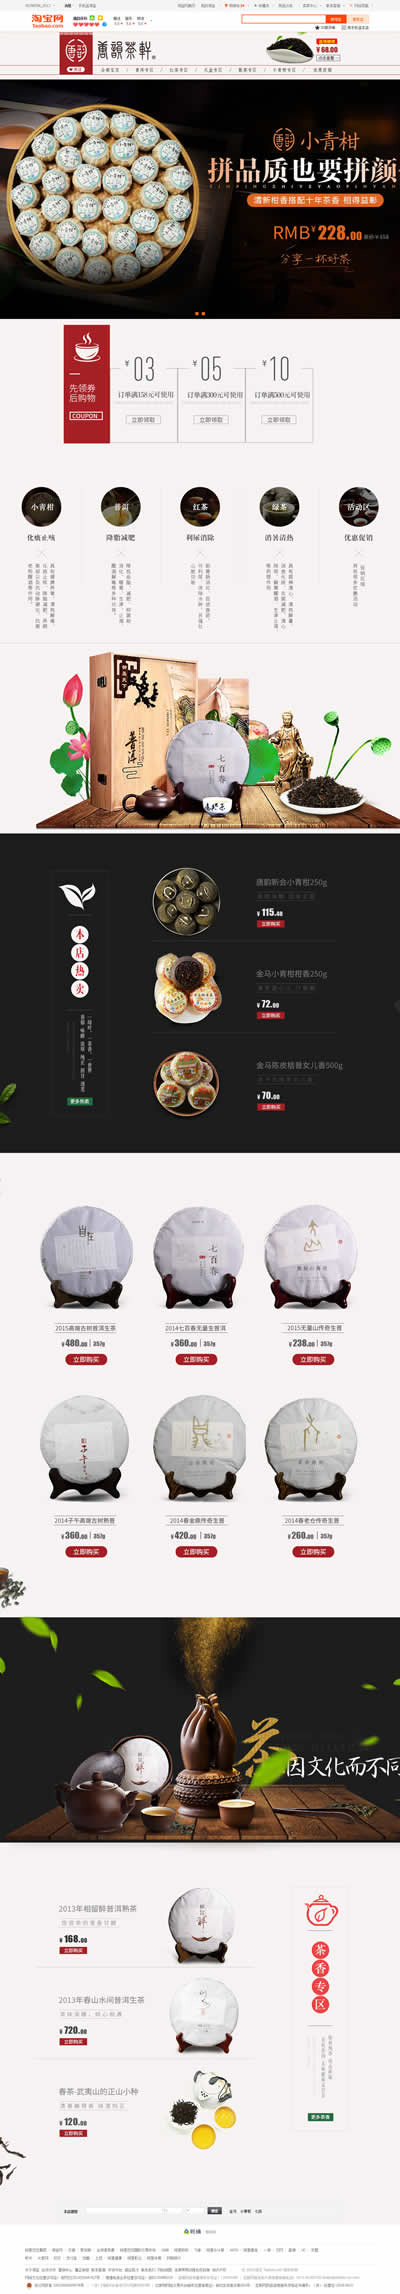 茶产品网站设计